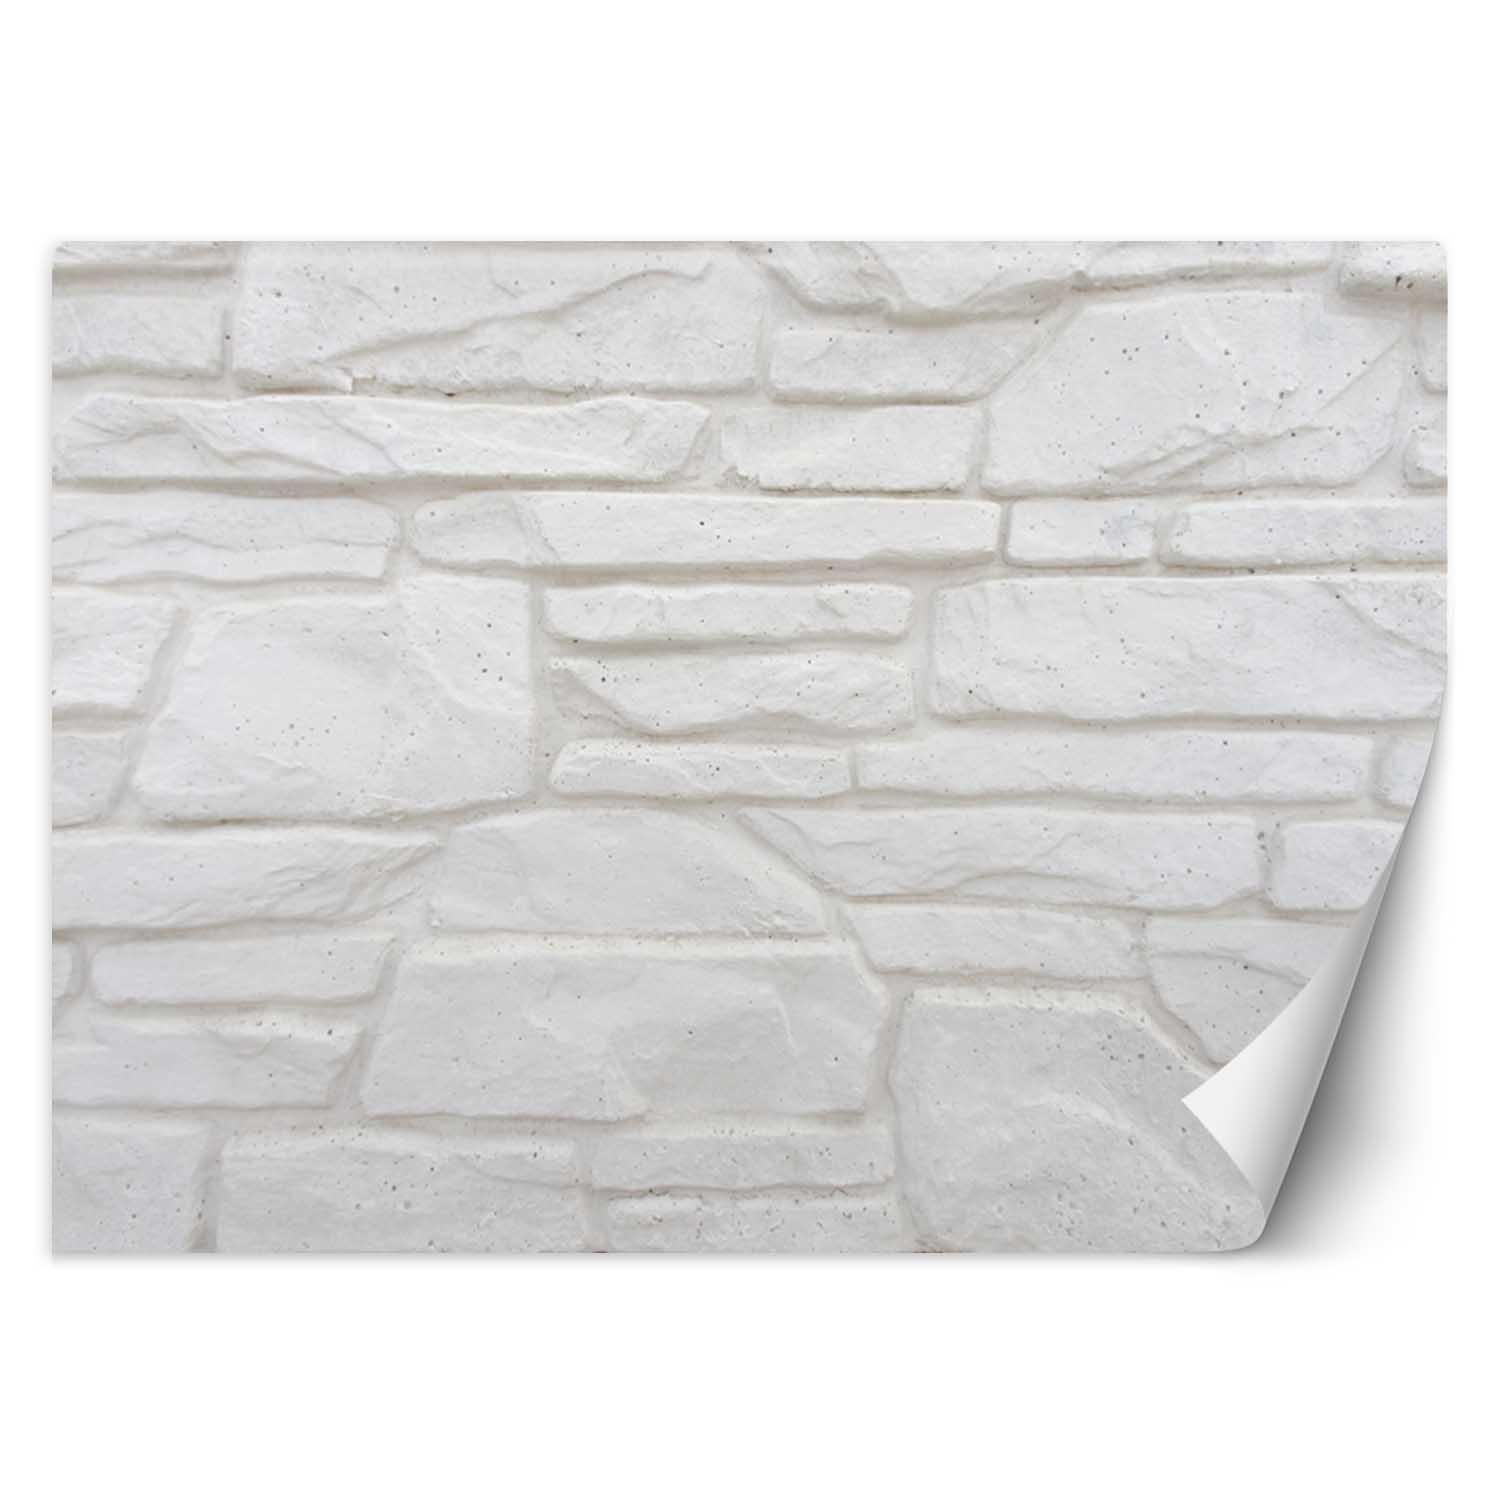 Trend24 – Behang – Witte Stenen Muur – Vliesbehang – Behang Woonkamer – Fotobehang – 400x280x2 cm – Incl. behanglijm